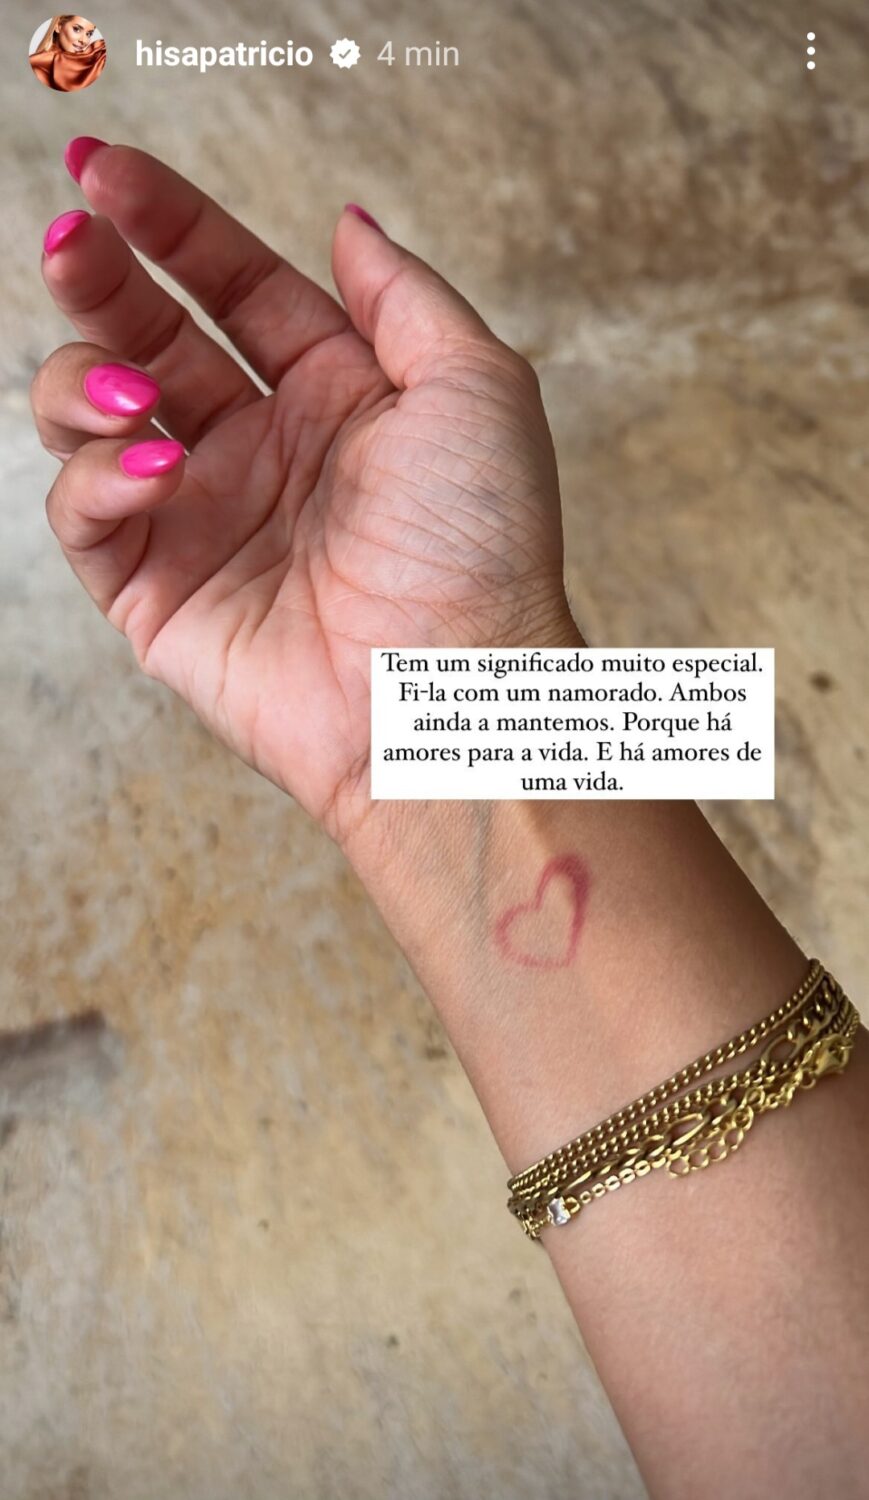 Após &#8220;brincadeira&#8221;, Helena Isabel mostra tatuagem em &#8220;sítio íntimo&#8221; e explica: &#8220;Fi-la com um namorado&#8230;&#8221;